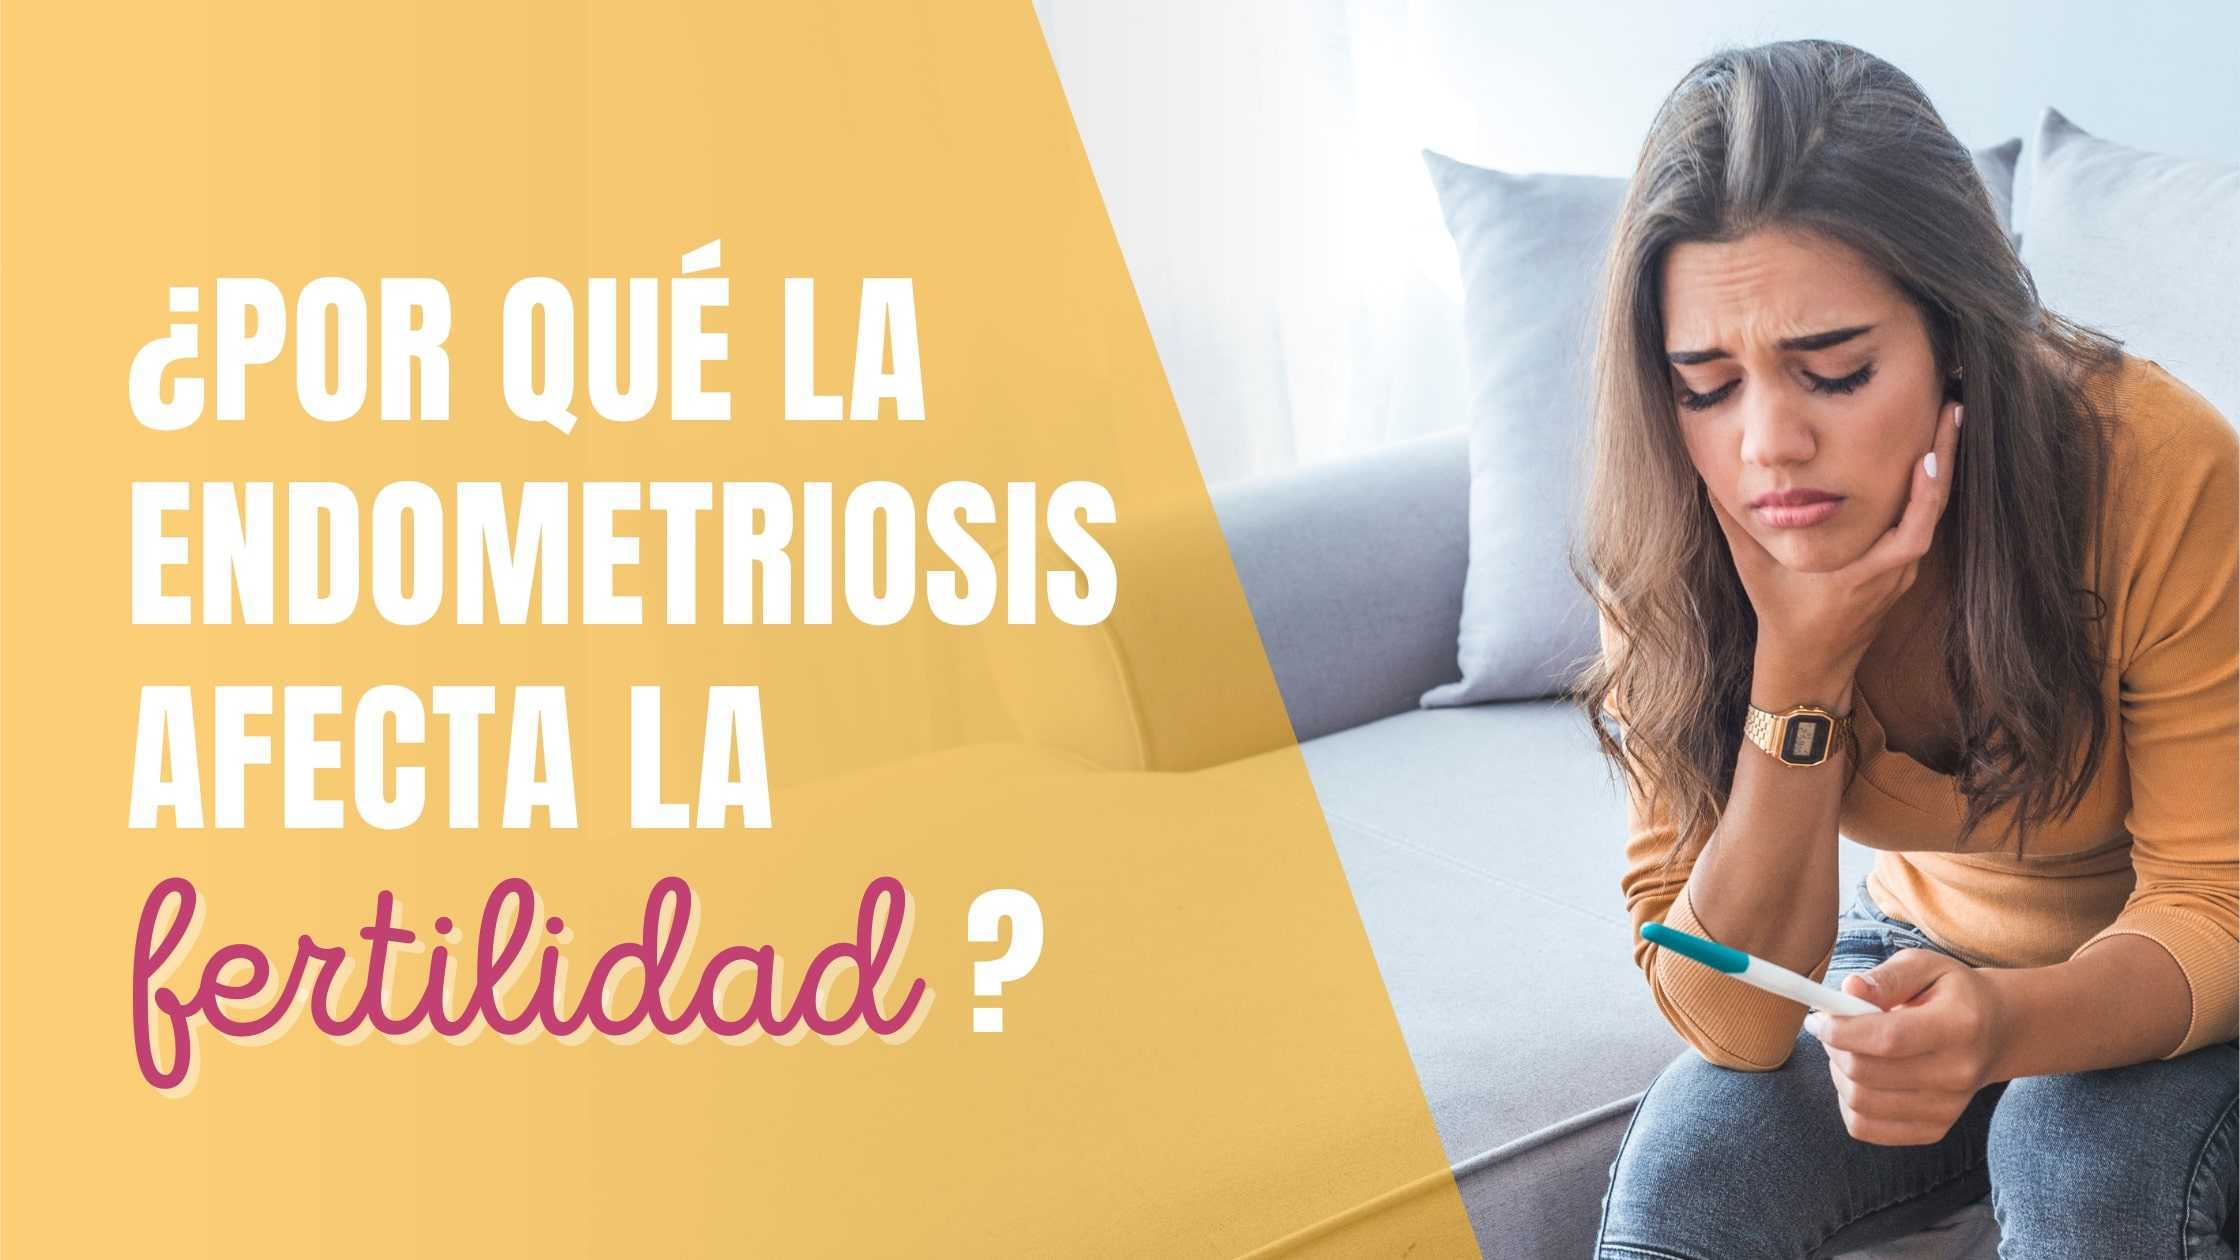 ¿Por qué la endometriosis afecta la fertilidad?